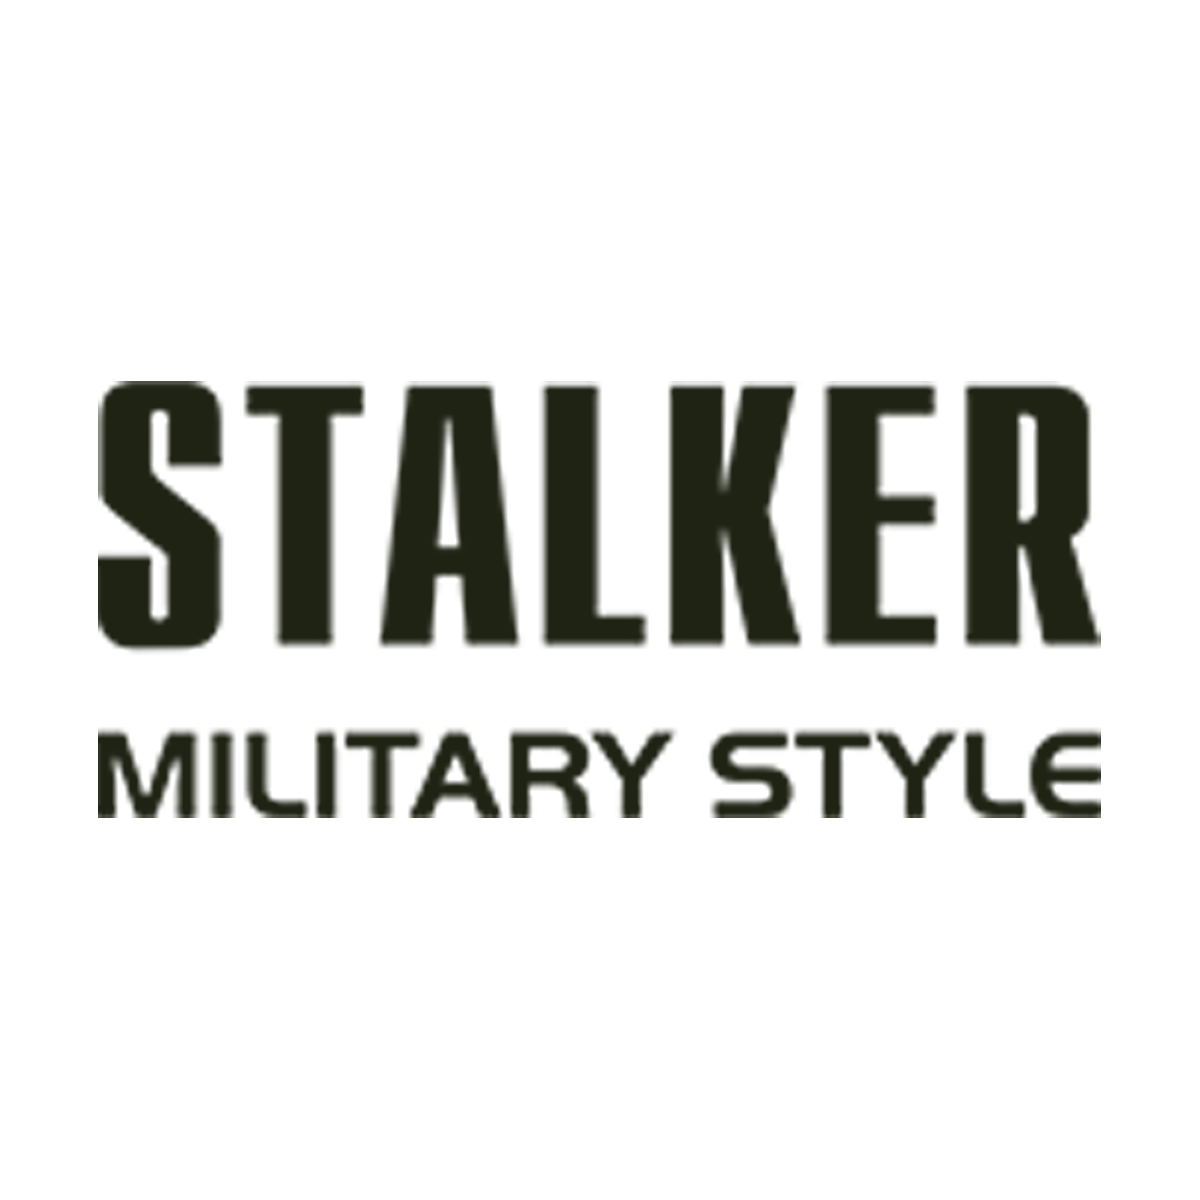 806-stalker-1200x1200.png